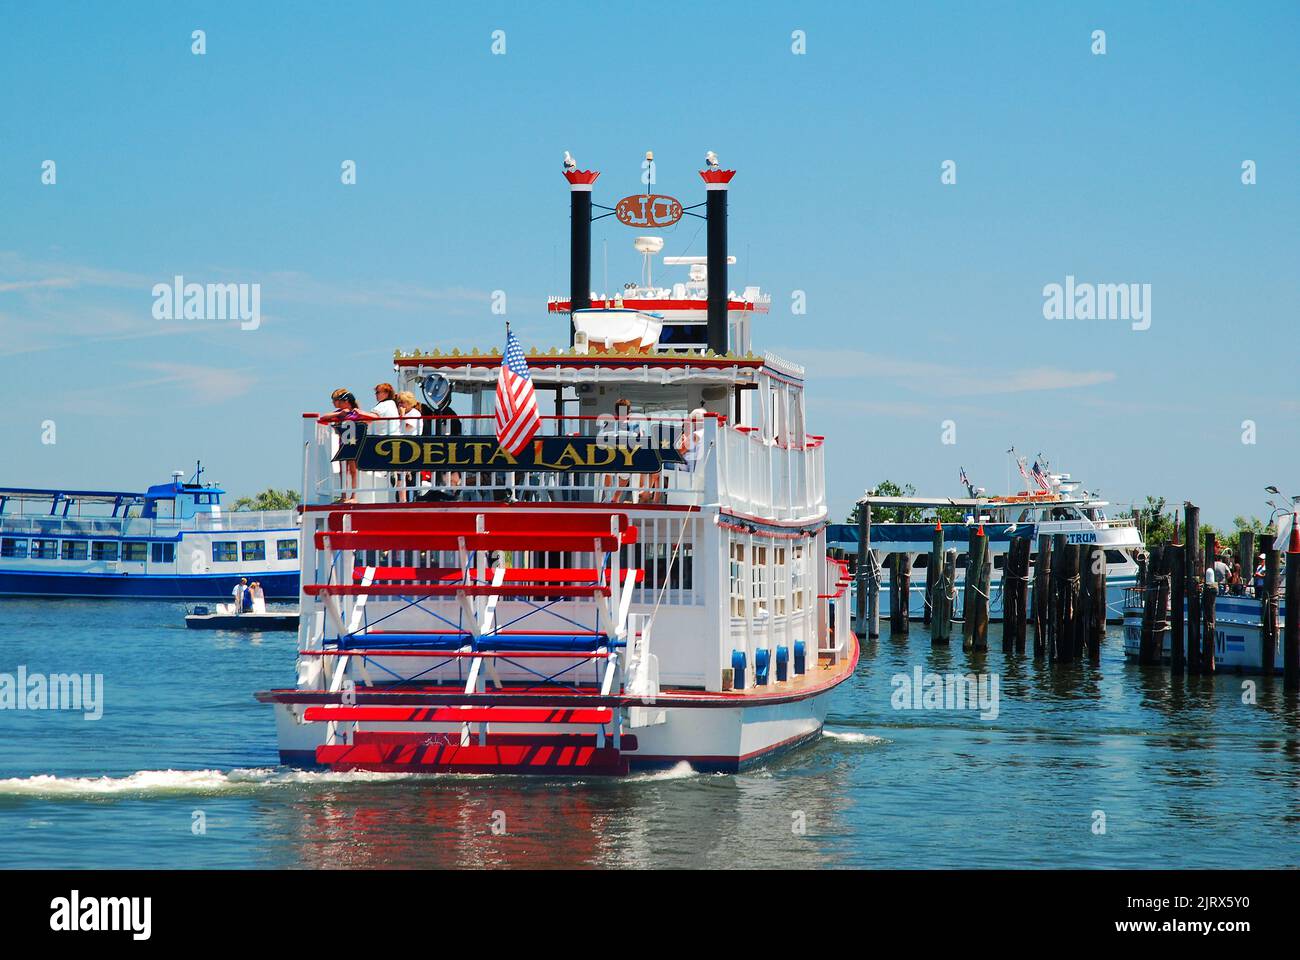 La Delta Lady, una replica dei piroscafi a vapore e delle barche a remi che solcano le acque del fiume Mississippi, trasporta i passeggeri in un tour ricreativo Foto Stock